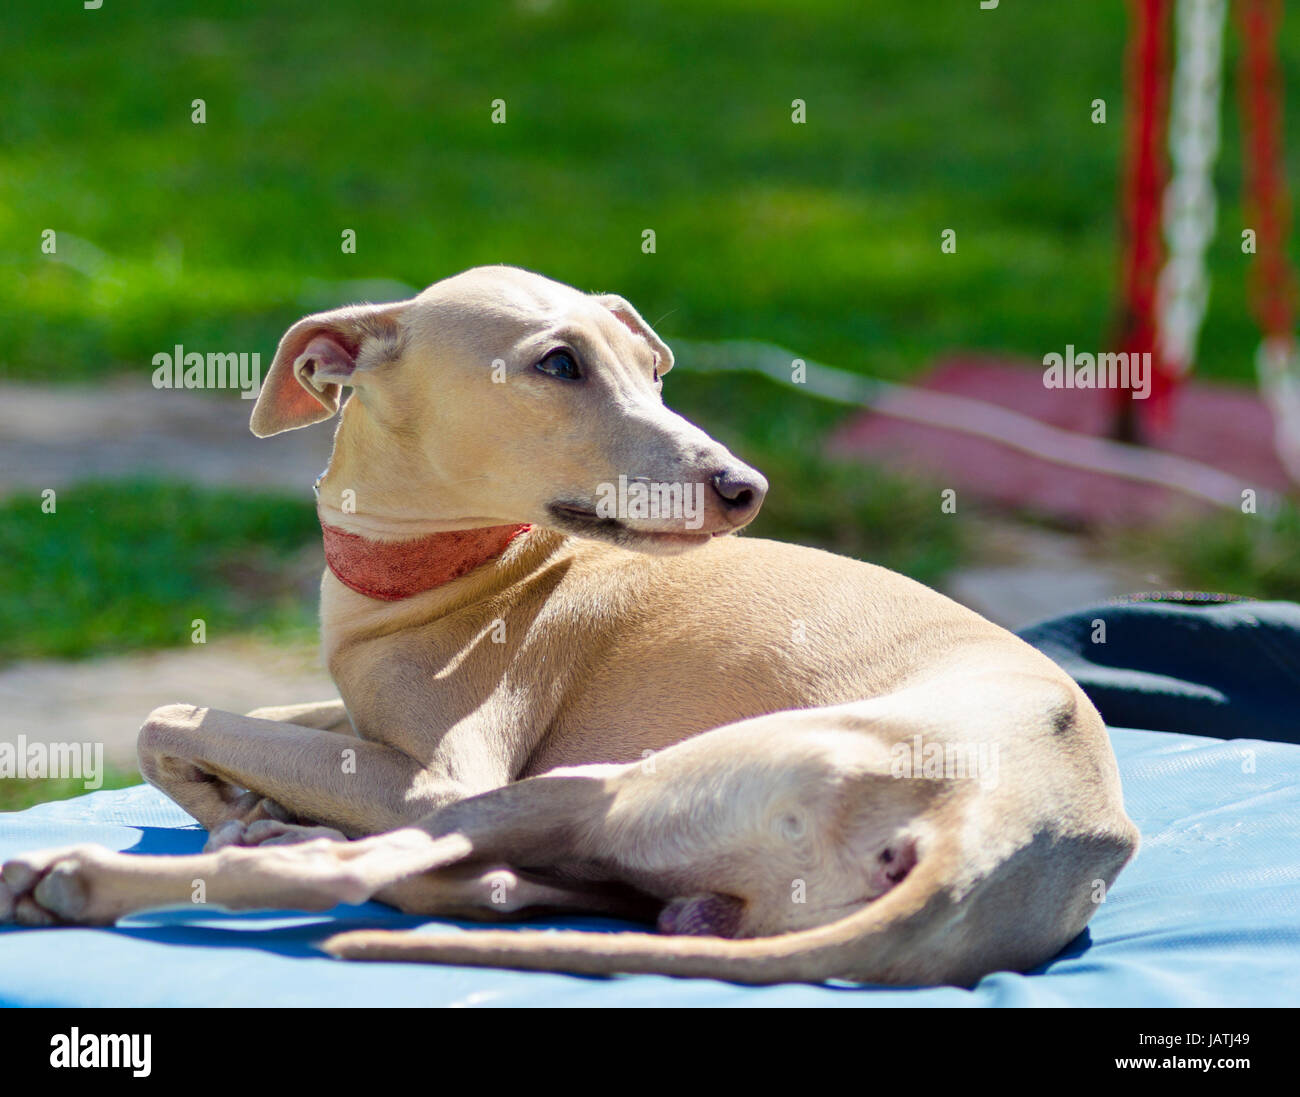 Eine kleine beige - braunen italienischen Greyhound-Hund liegend. Graue  Hunde sind sehr dünn und haben eine schlanke Struktur, wodurch sie sehr  zerbrechlich aussehen Stockfotografie - Alamy